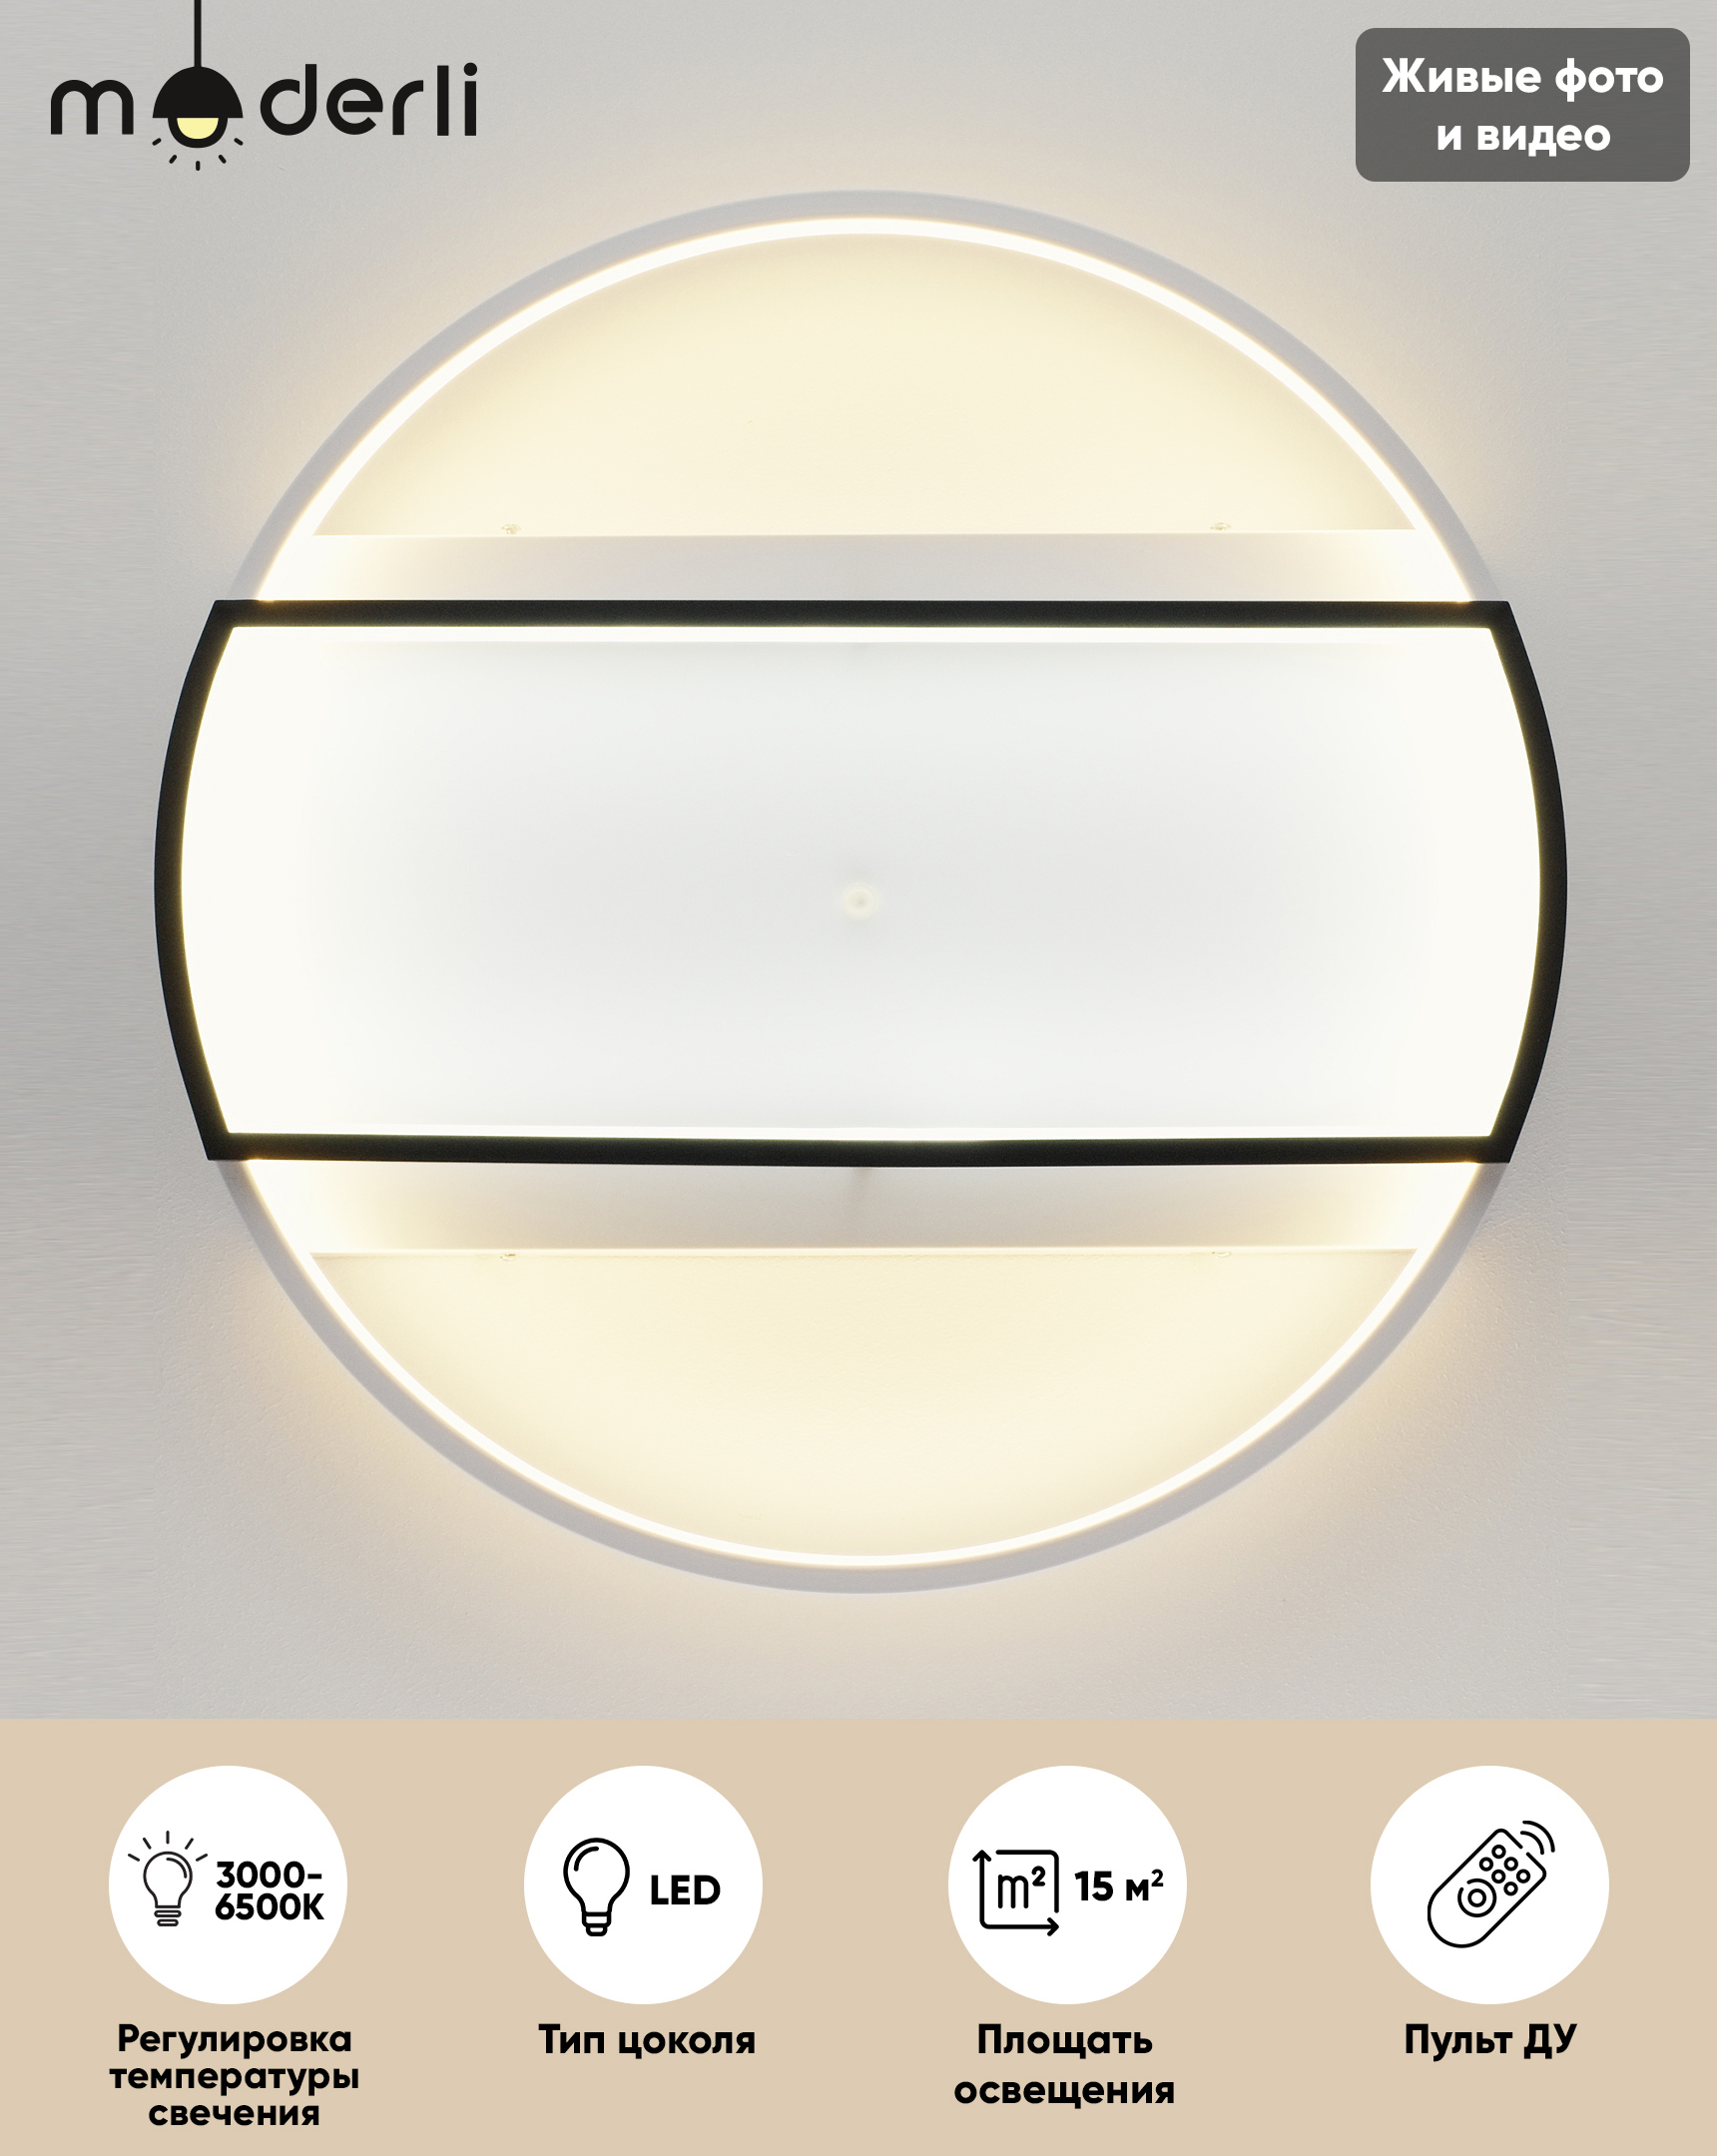 90251507 Светильник потолочный светодиодный Criteo V1061-CL 15 м² изменение оттенков белого цвет белый STLM-0150612 MODERLI